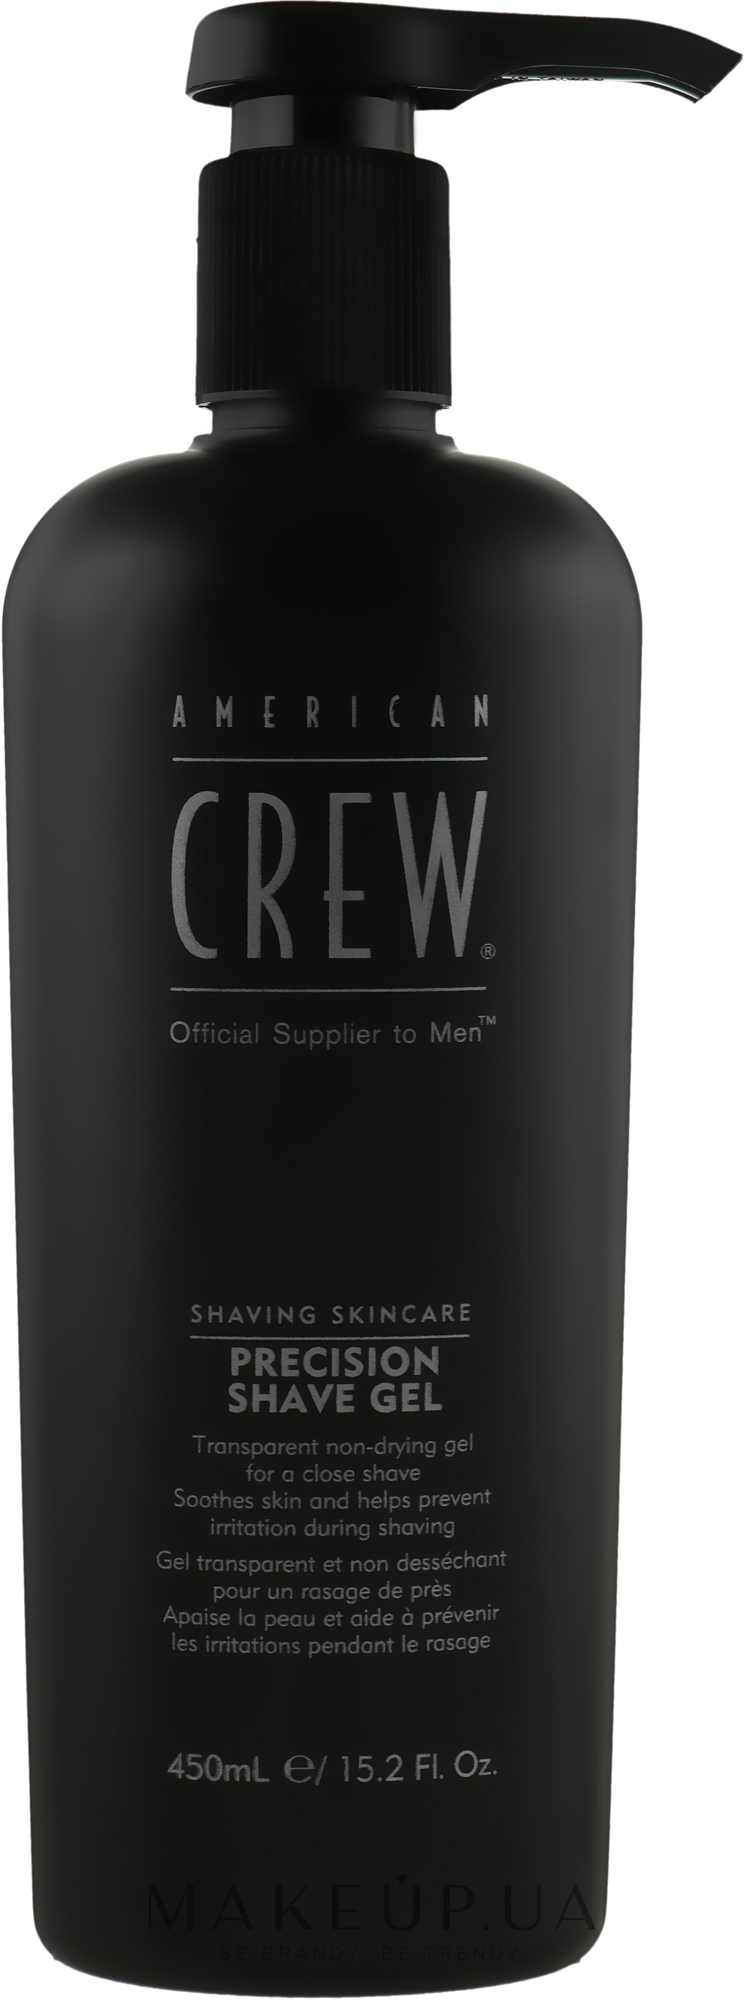 Гель для точного бритья - American Crew Precision Shave Gel — фото 450ml